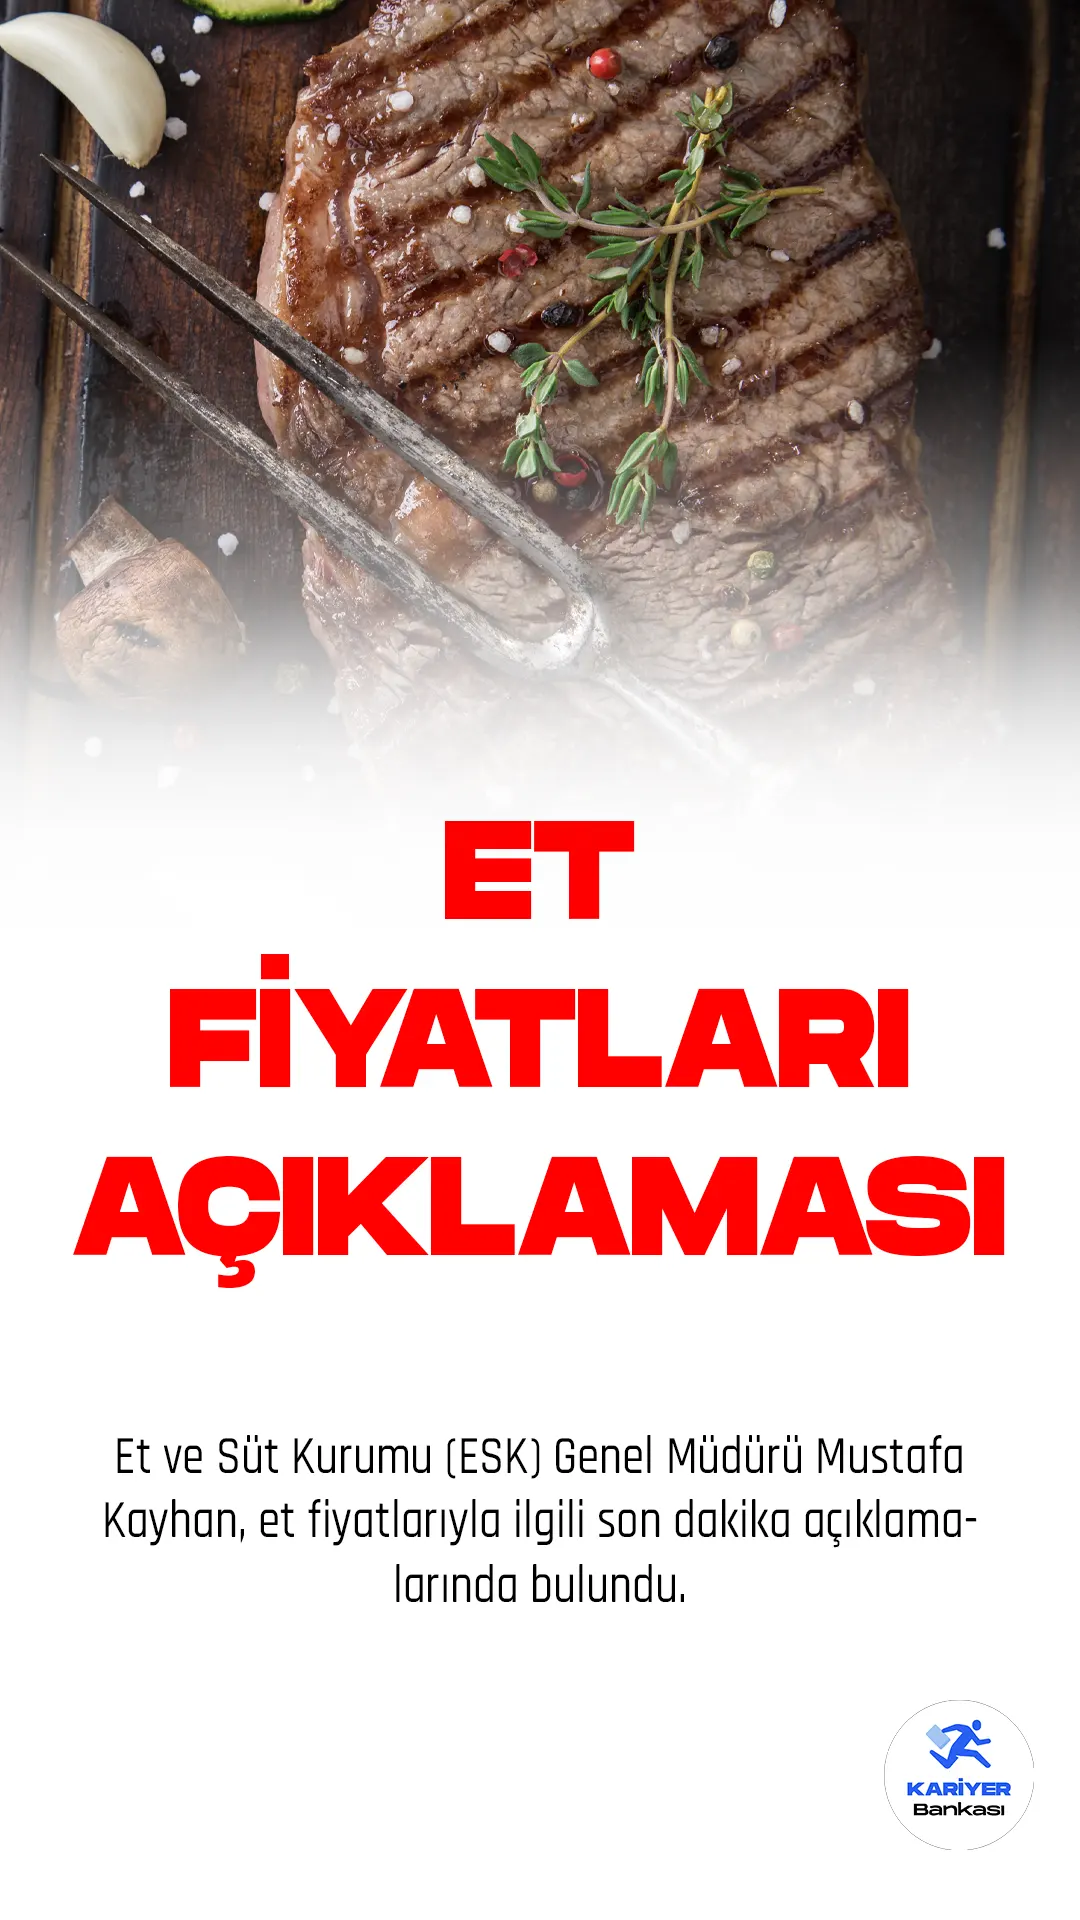 Et ve Süt Kurumu (ESK) Genel Müdürü Mustafa Kayhan, ramazan ayı öncesinde et fiyatlarındaki artışın önüne geçmek için Tarım Kredi Market zincirleri ile bir protokol imzaladıklarını duyurdu. Yapılan protokol kapsamında, ESK tarafından verilen ürünlerin miktarı aylık minimum 600 tona çıkarılarak, MAP ambalajlı 1'er kilogramlık kıyma ve kuşbaşı etler piyasaya sürülecek. Kıyma kilogram fiyatı 140 lira, kuşbaşı etin kilogram fiyatı da 150 lira olarak belirlendi.